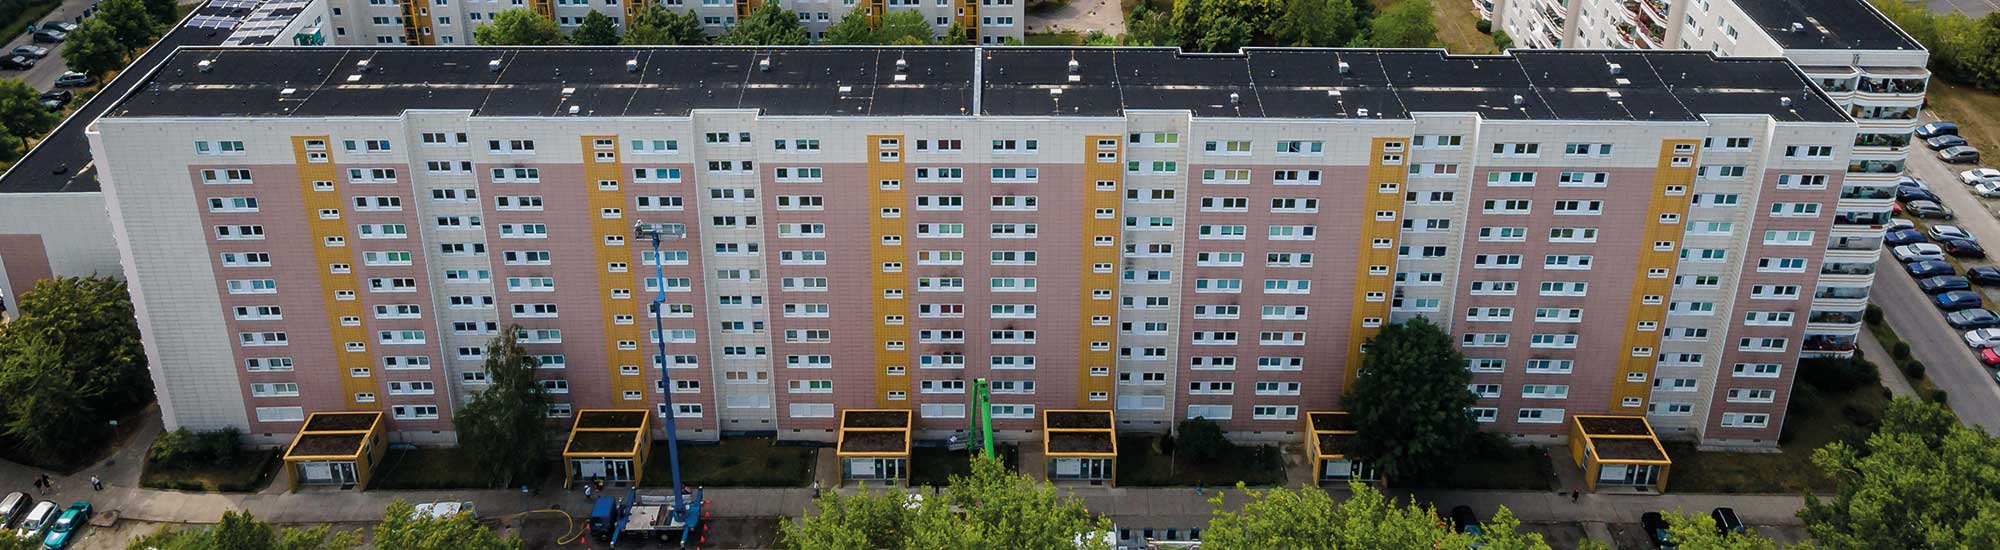 Von der Pauschalfestpreisgarantie profitiert: Ein Wohnblock des Wohnungsunternehmens Neues Berlin.